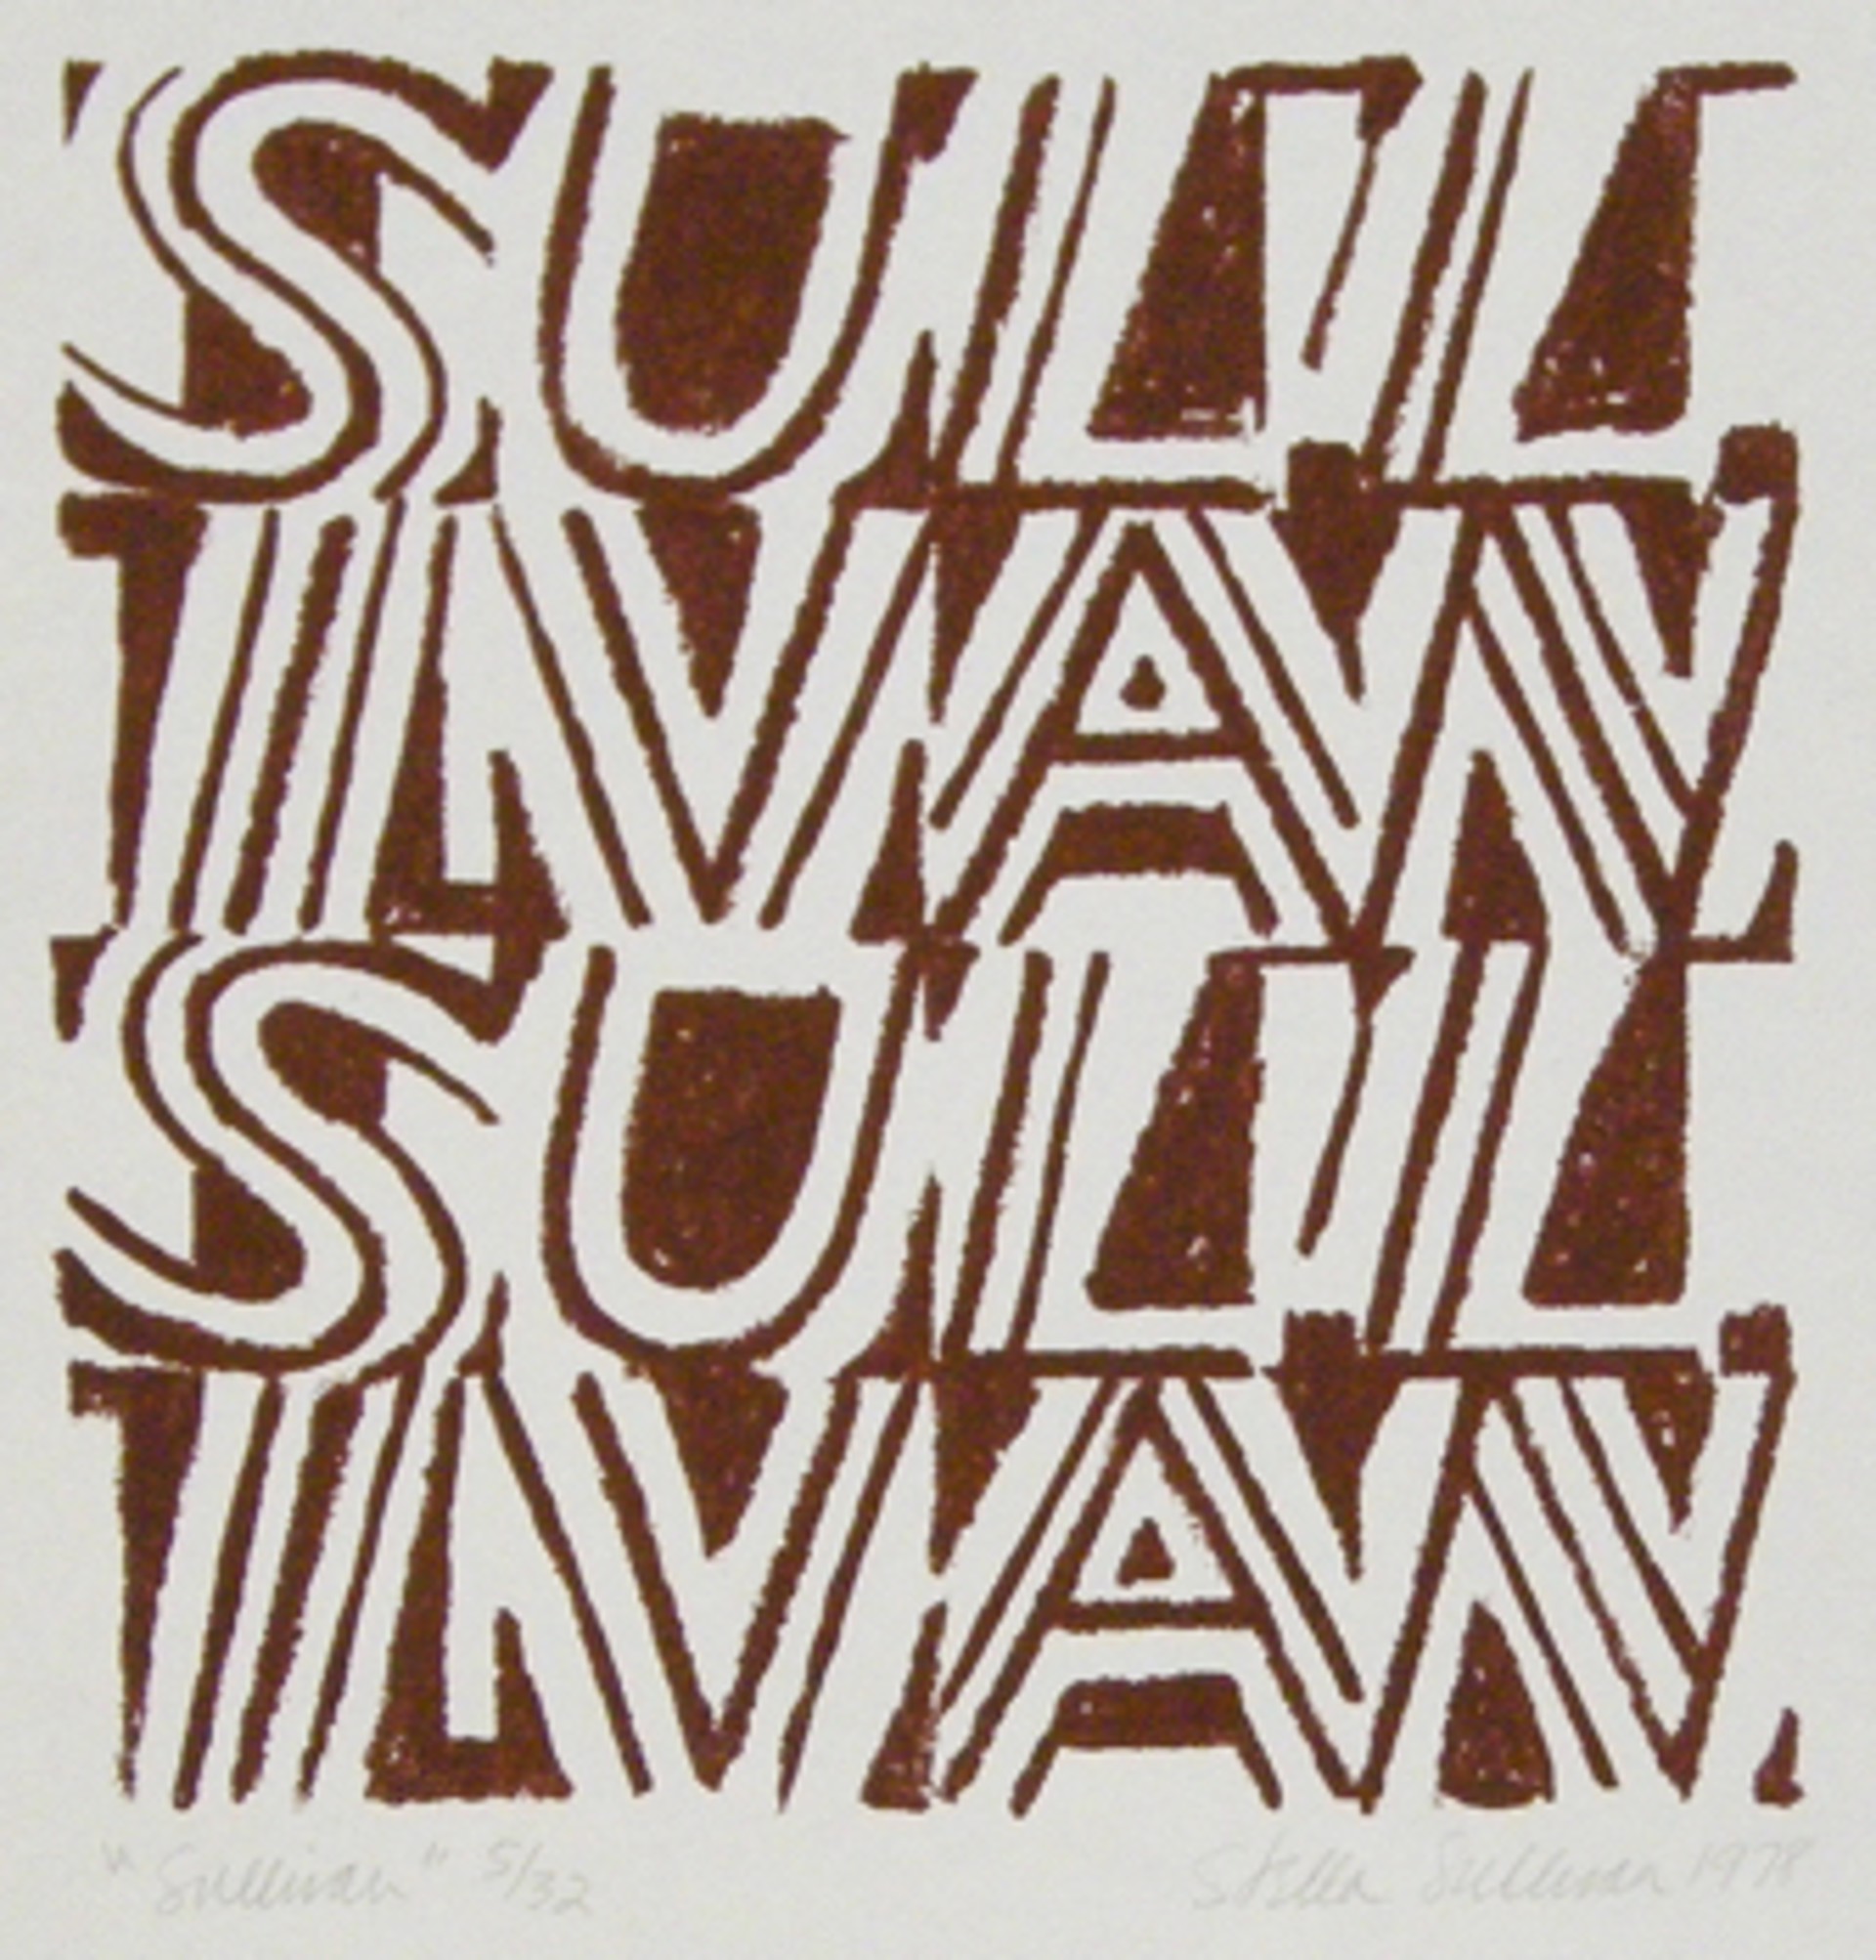 Sullivan by Stella Sullivan